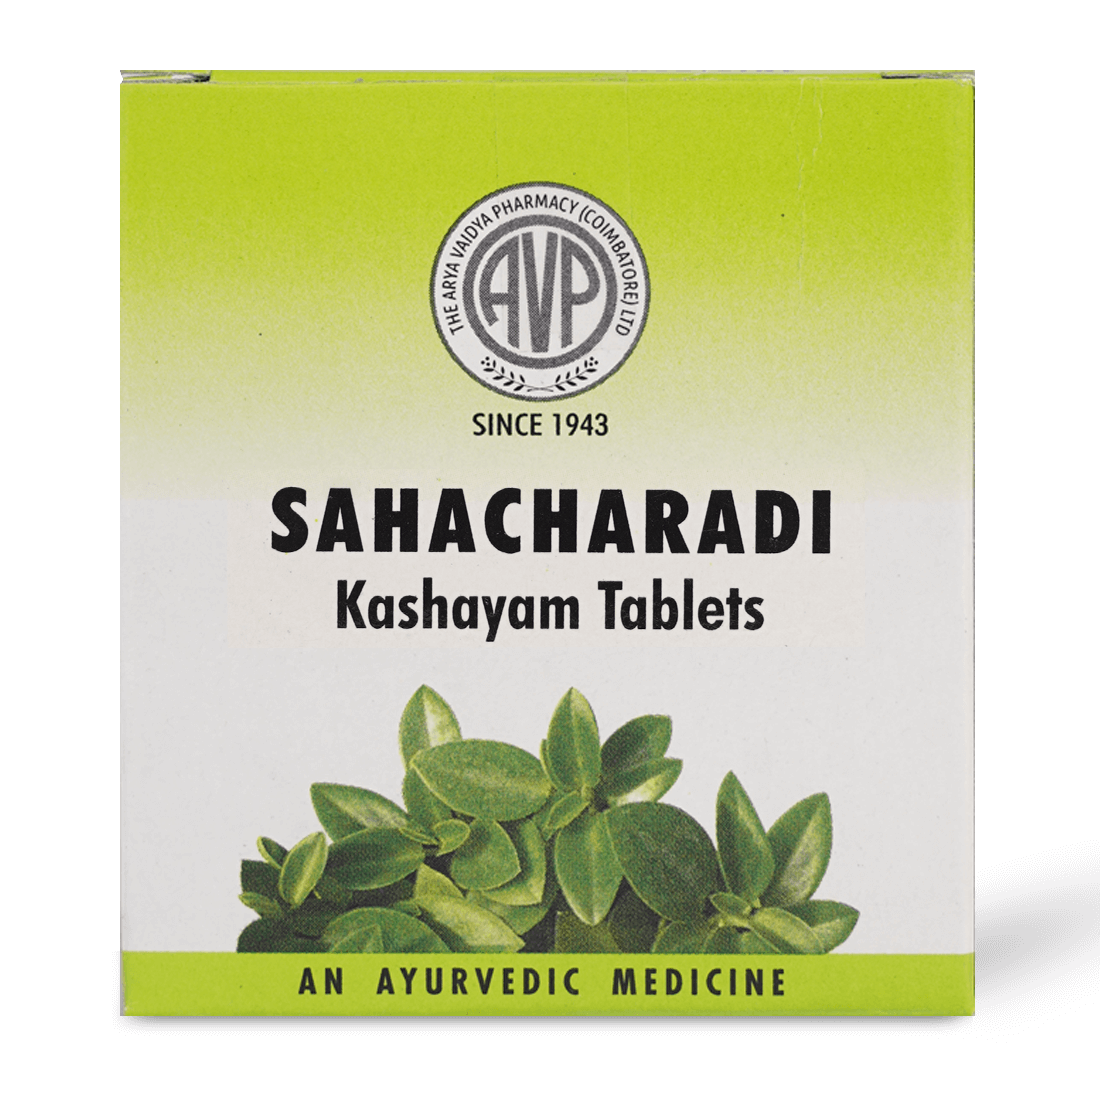 Sahacharadi Kashayam Tablets